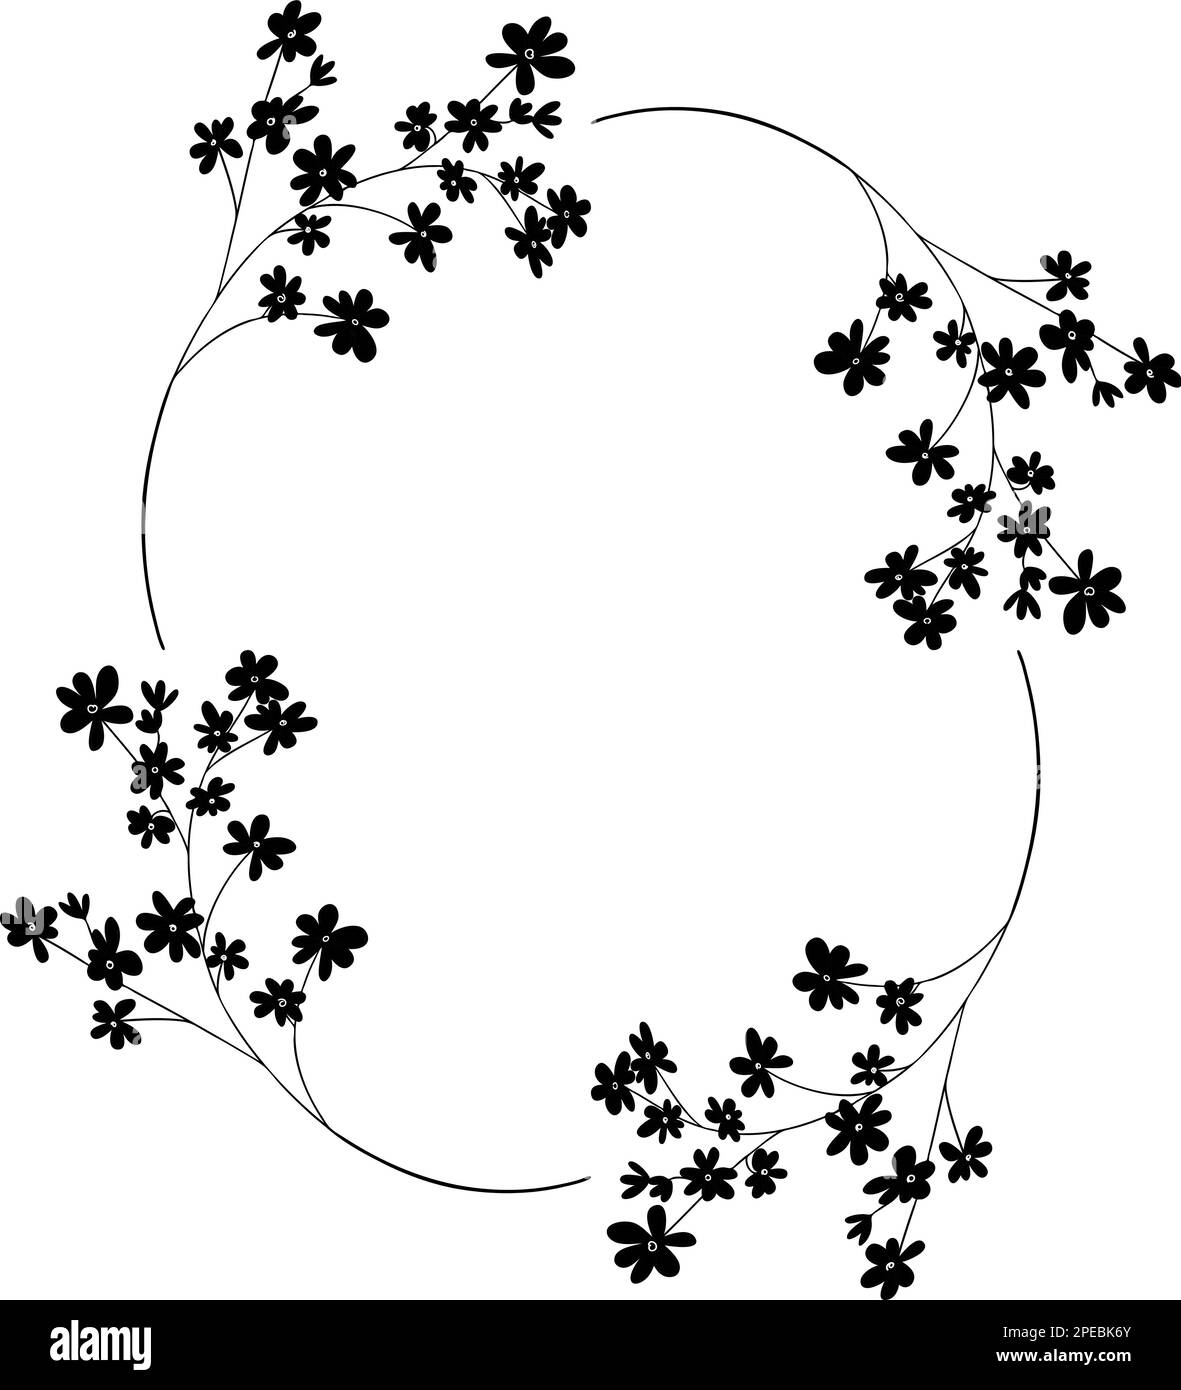 Delicata cornice floreale disegnata a mano, corona di fiori neri Illustrazione Vettoriale